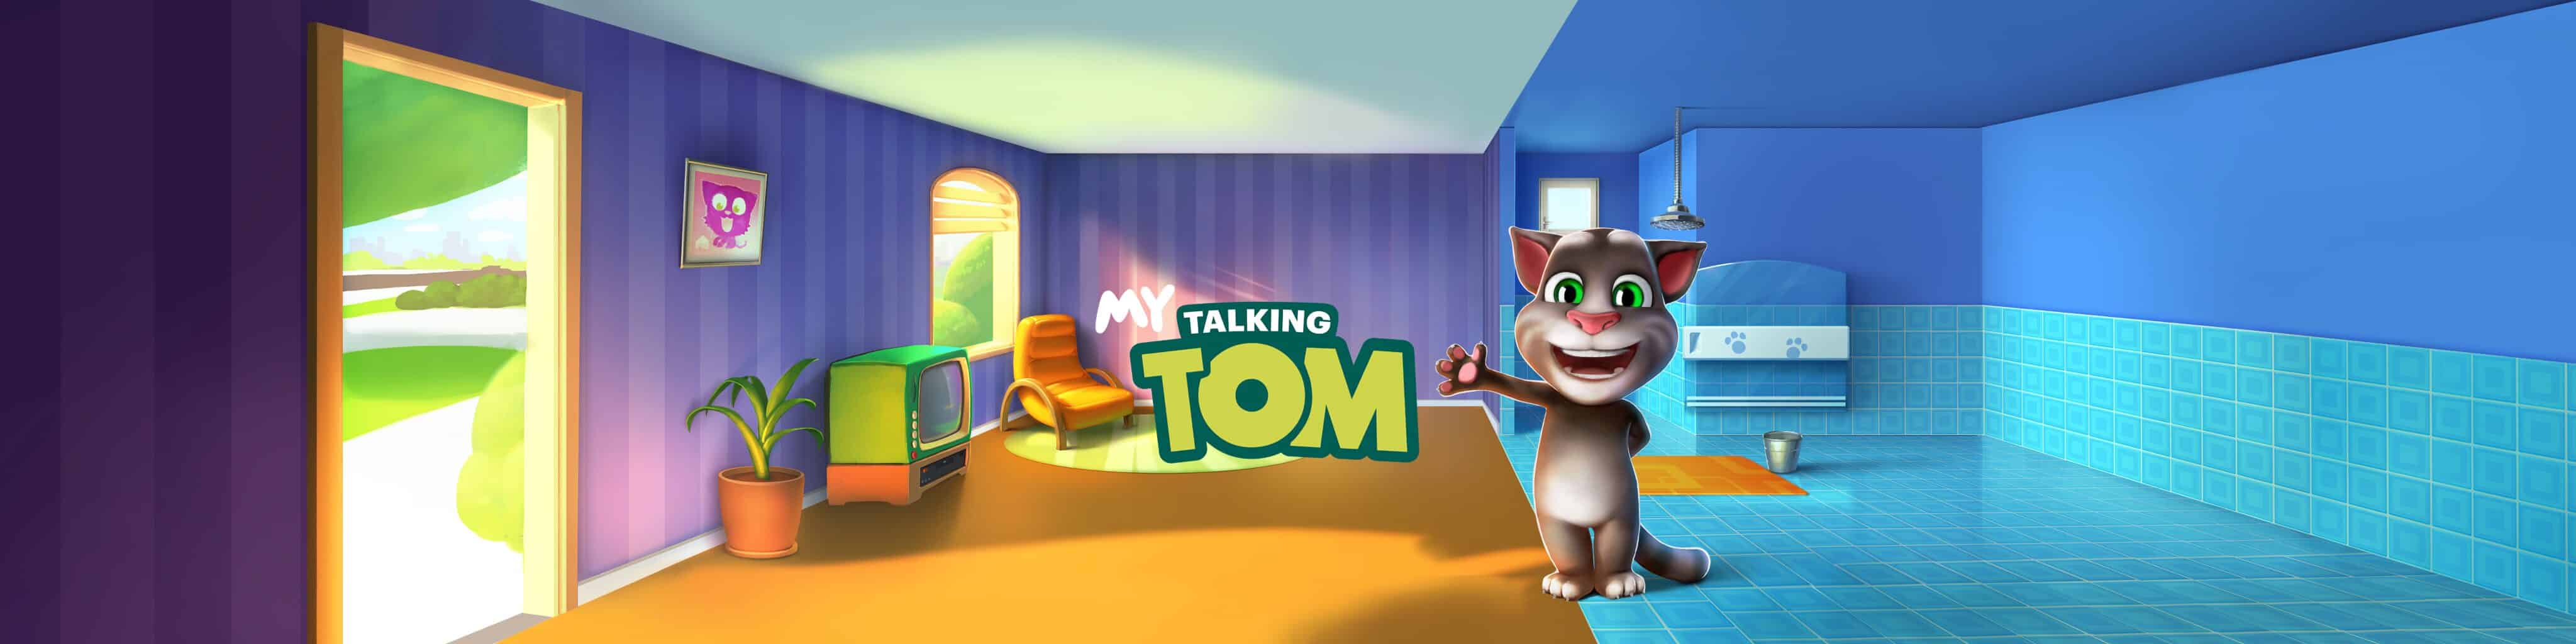 Tom o gato falante